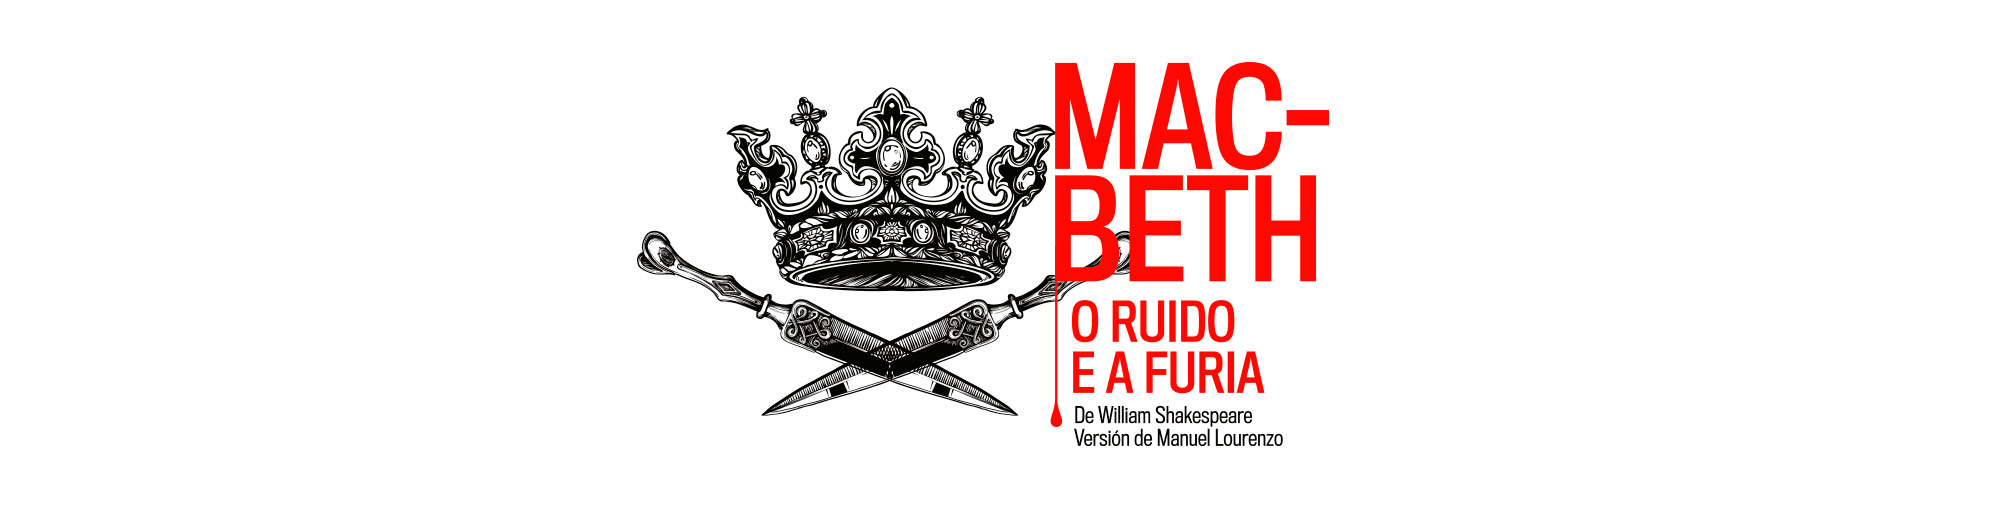 Diseño de campaña gráfica para Macbeth en gallego